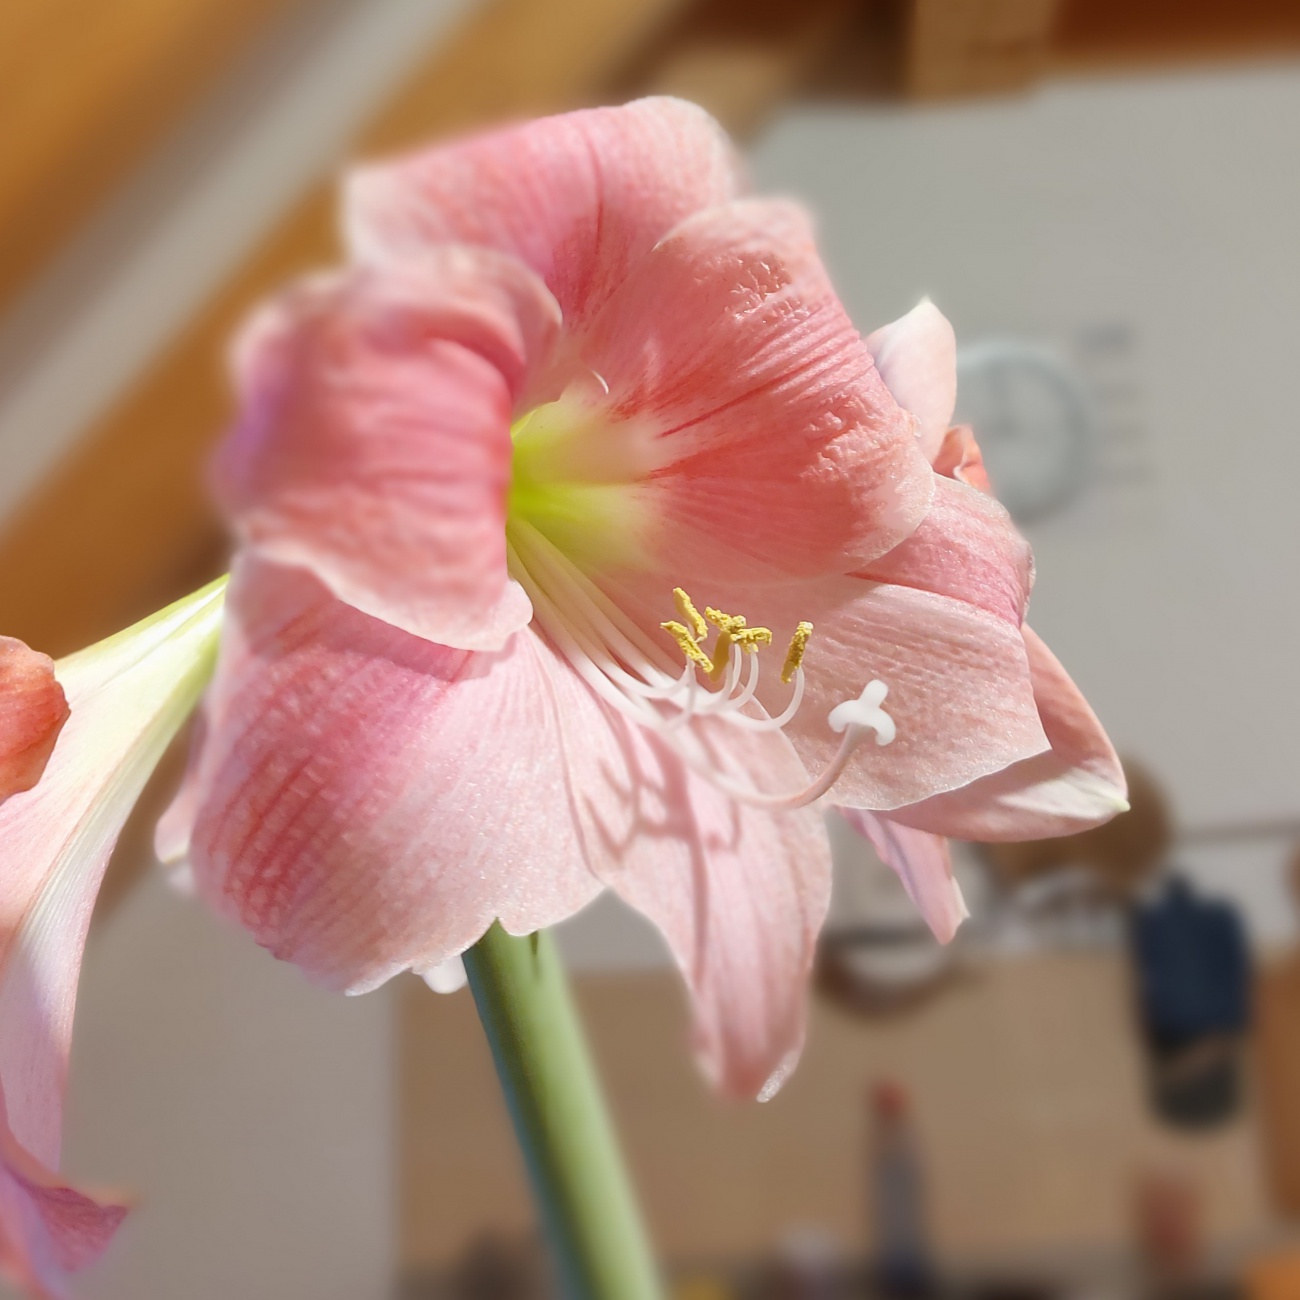 Foto: Martin Zehrer - Welch schöne Blüte...<br />
So schön wie das Geburtstagskind :-) 